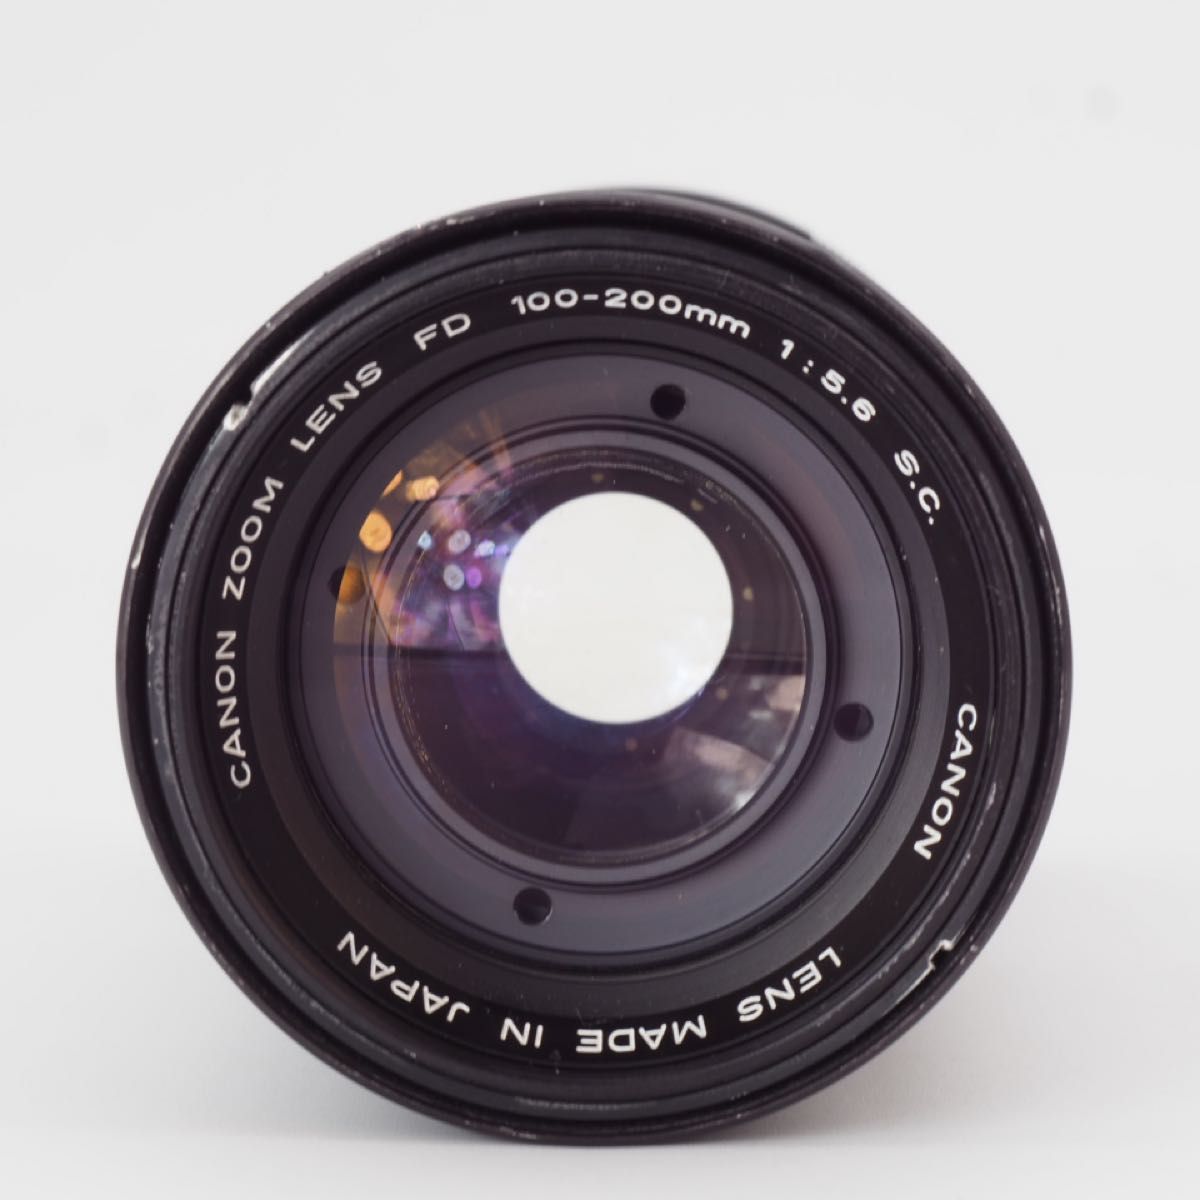 Canon キヤノン Zoom FD 100-200mm f5.6 S.C. オールドレンズ